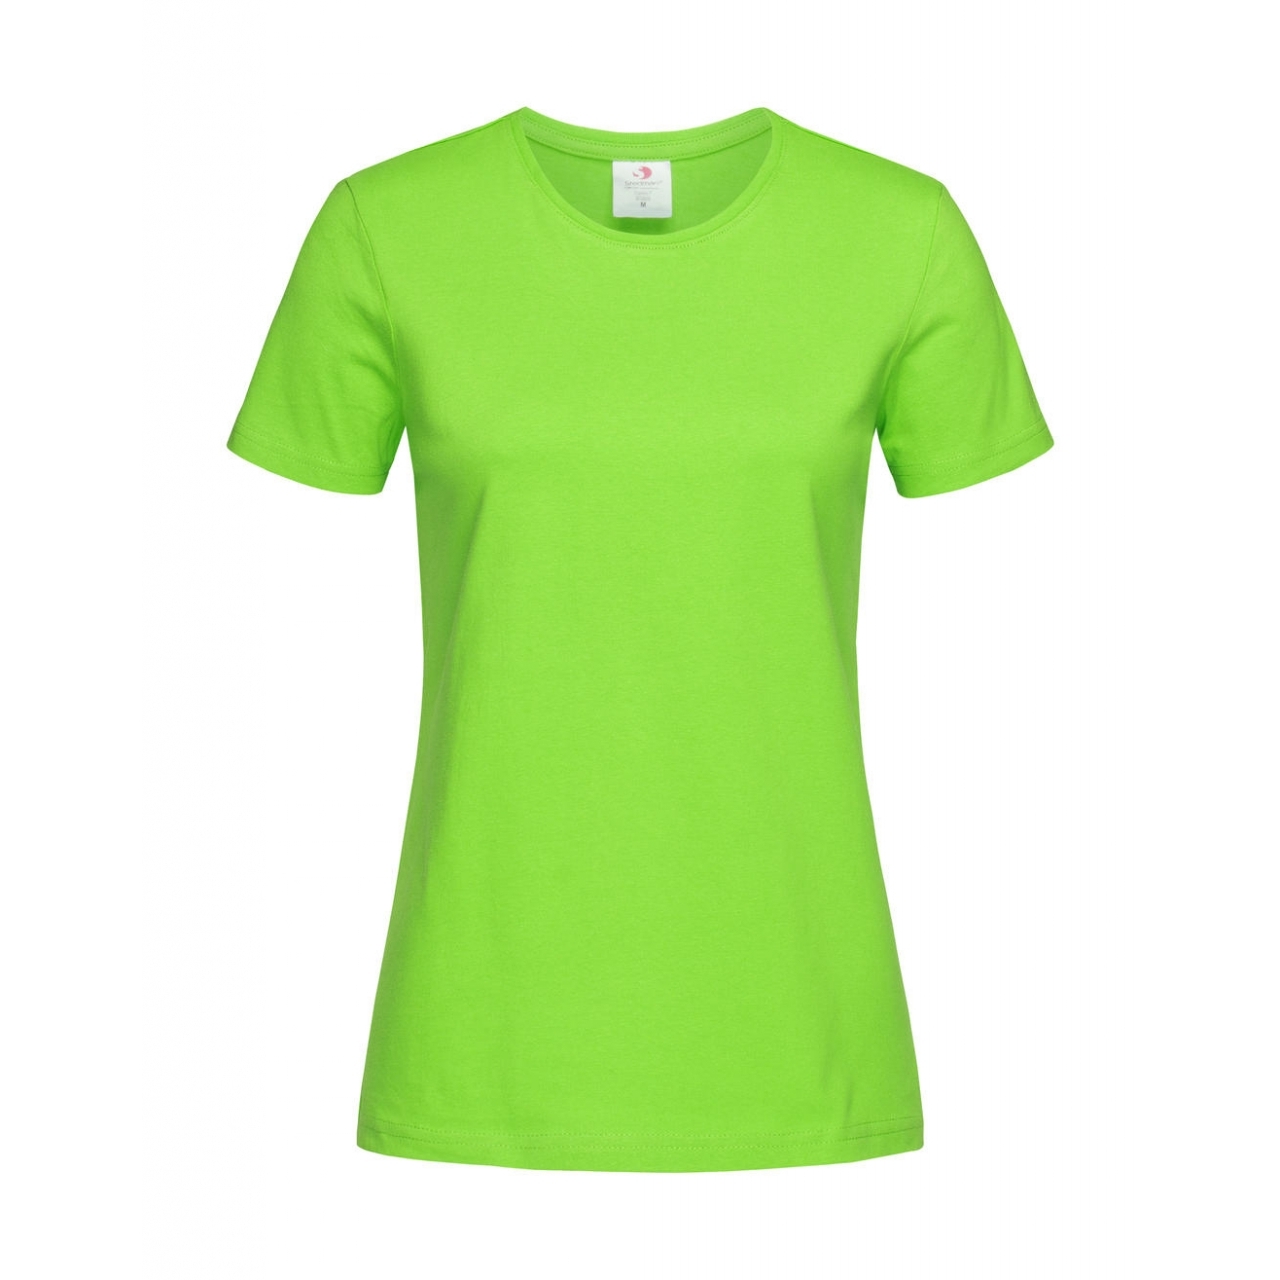 Tričko dámské Stedman Fitted s kulatým výstřihem - světle zelené, L